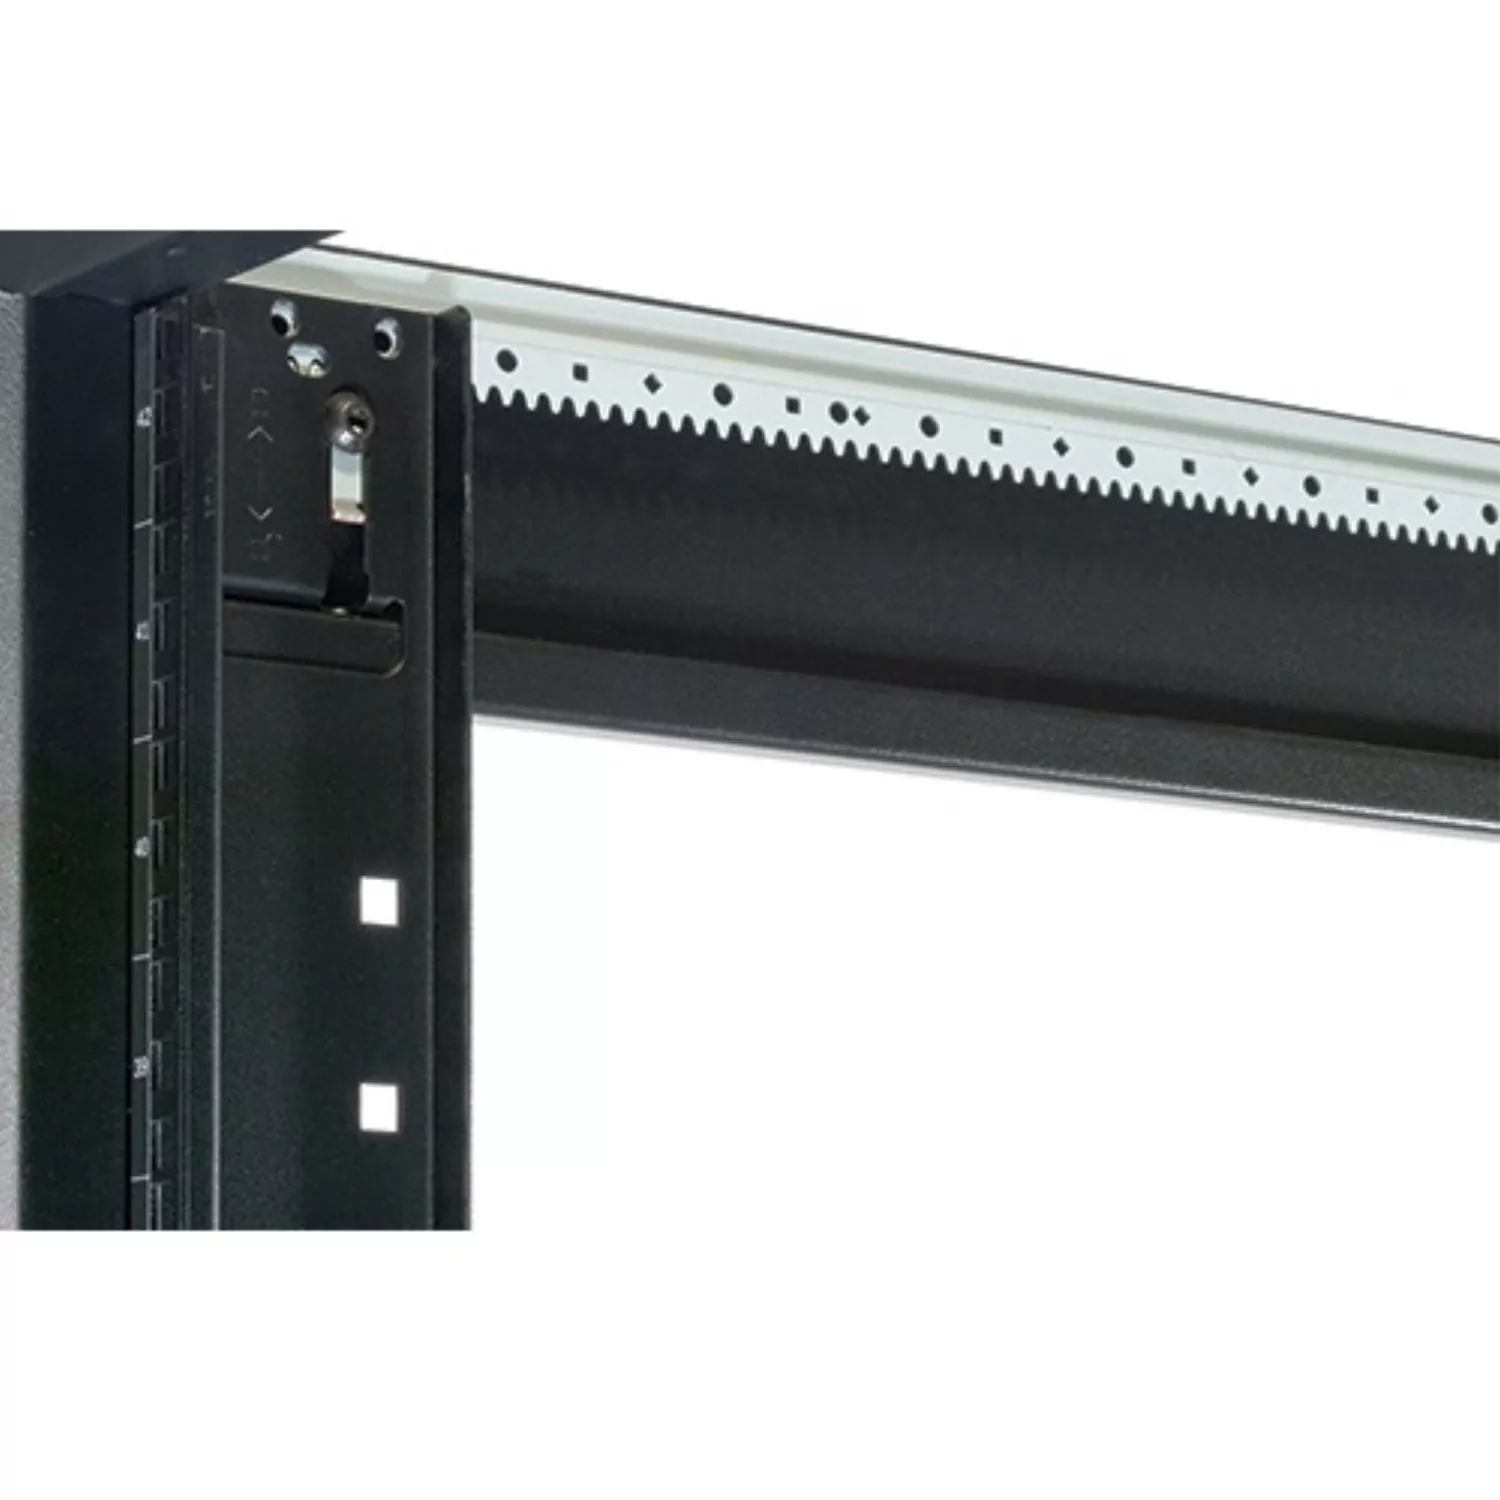 Vente APC NetShelter SX 42U 600mm Wide x 1070mm APC au meilleur prix - visuel 4